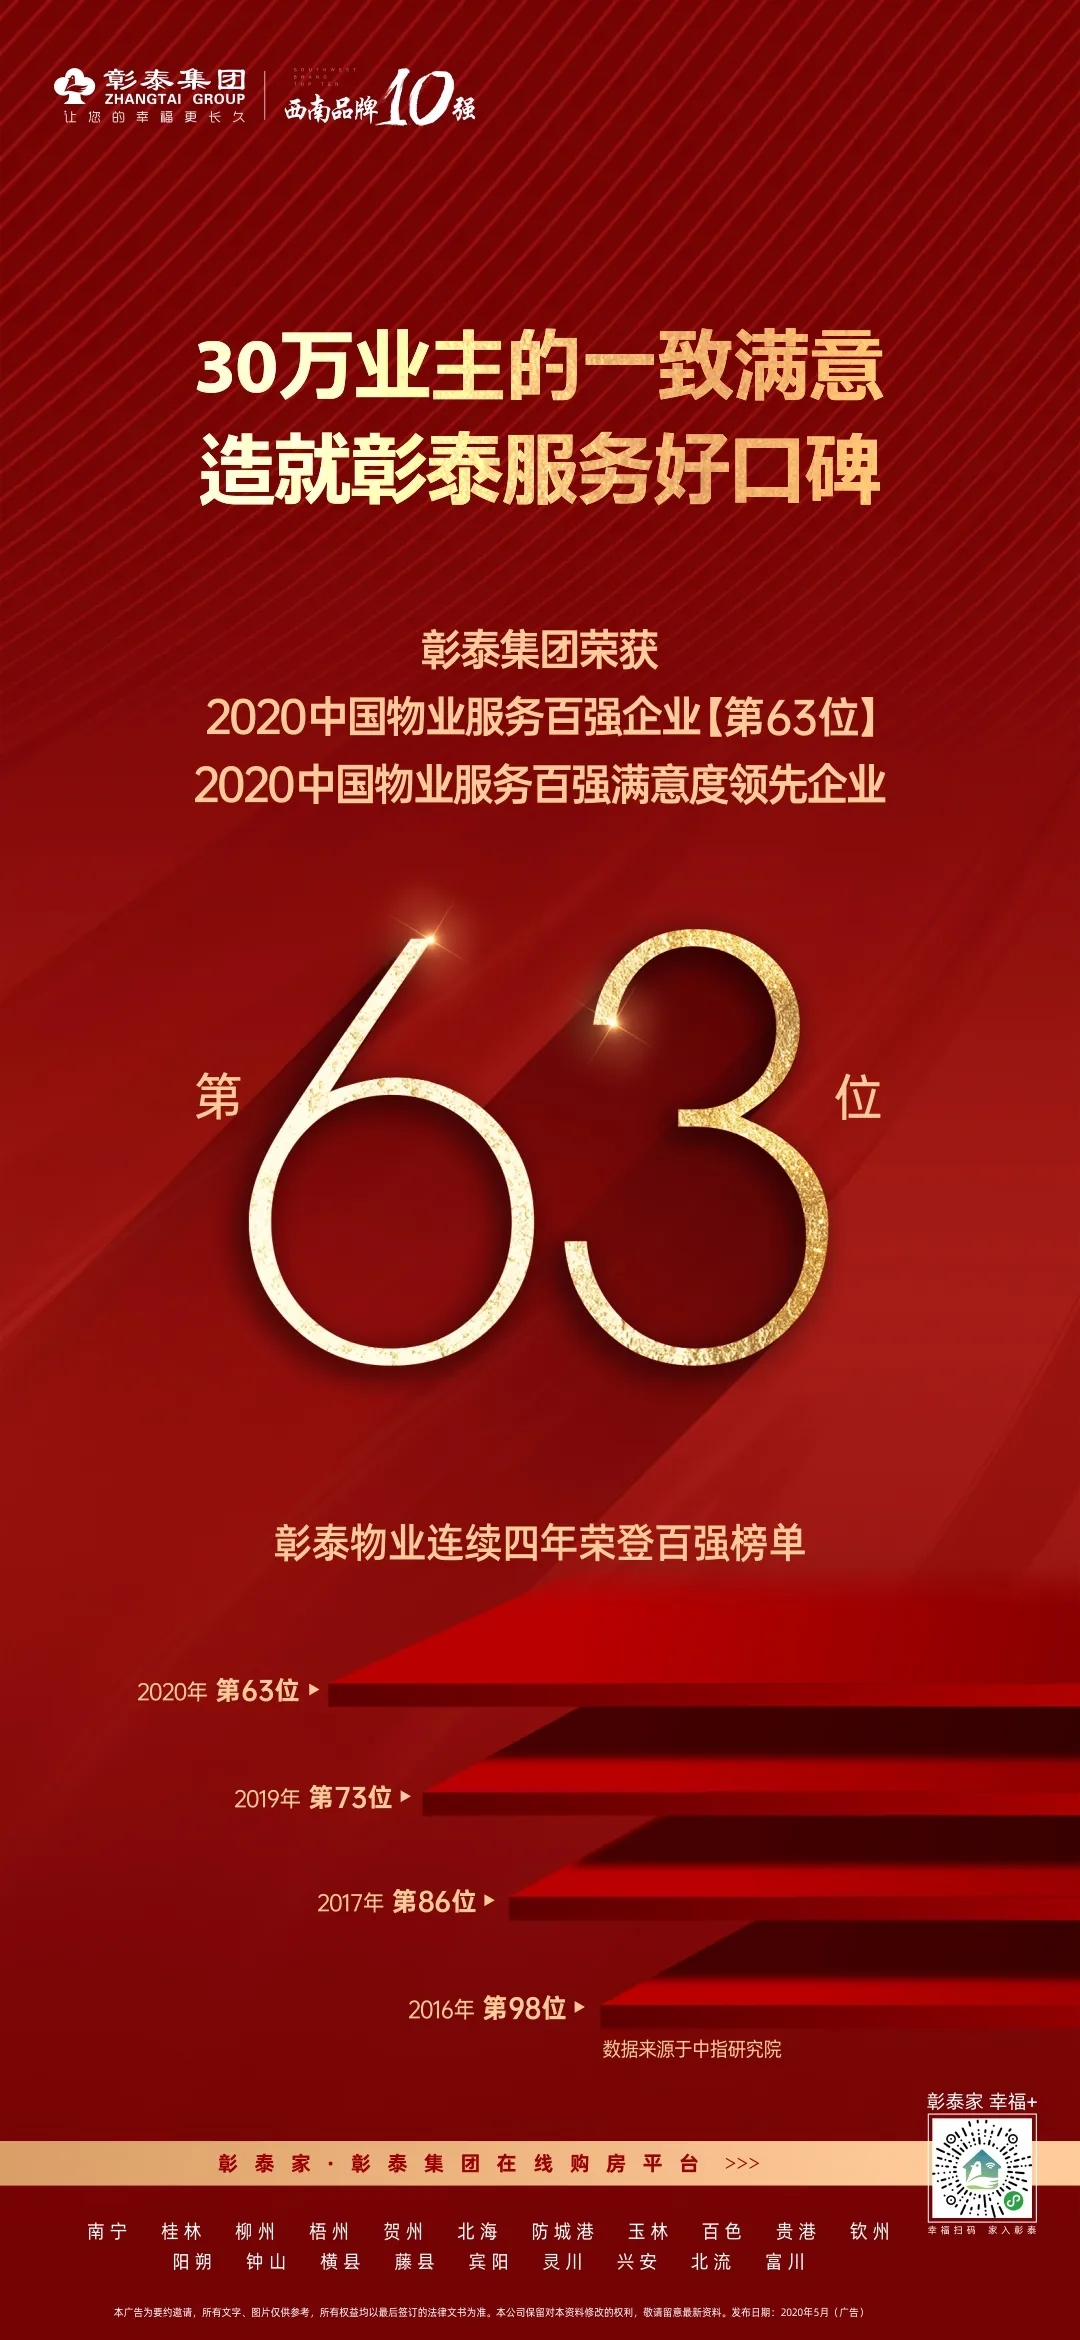 品质前行 引领标杆|彰泰物业荣获2020中国物业服务百强企业第63位！